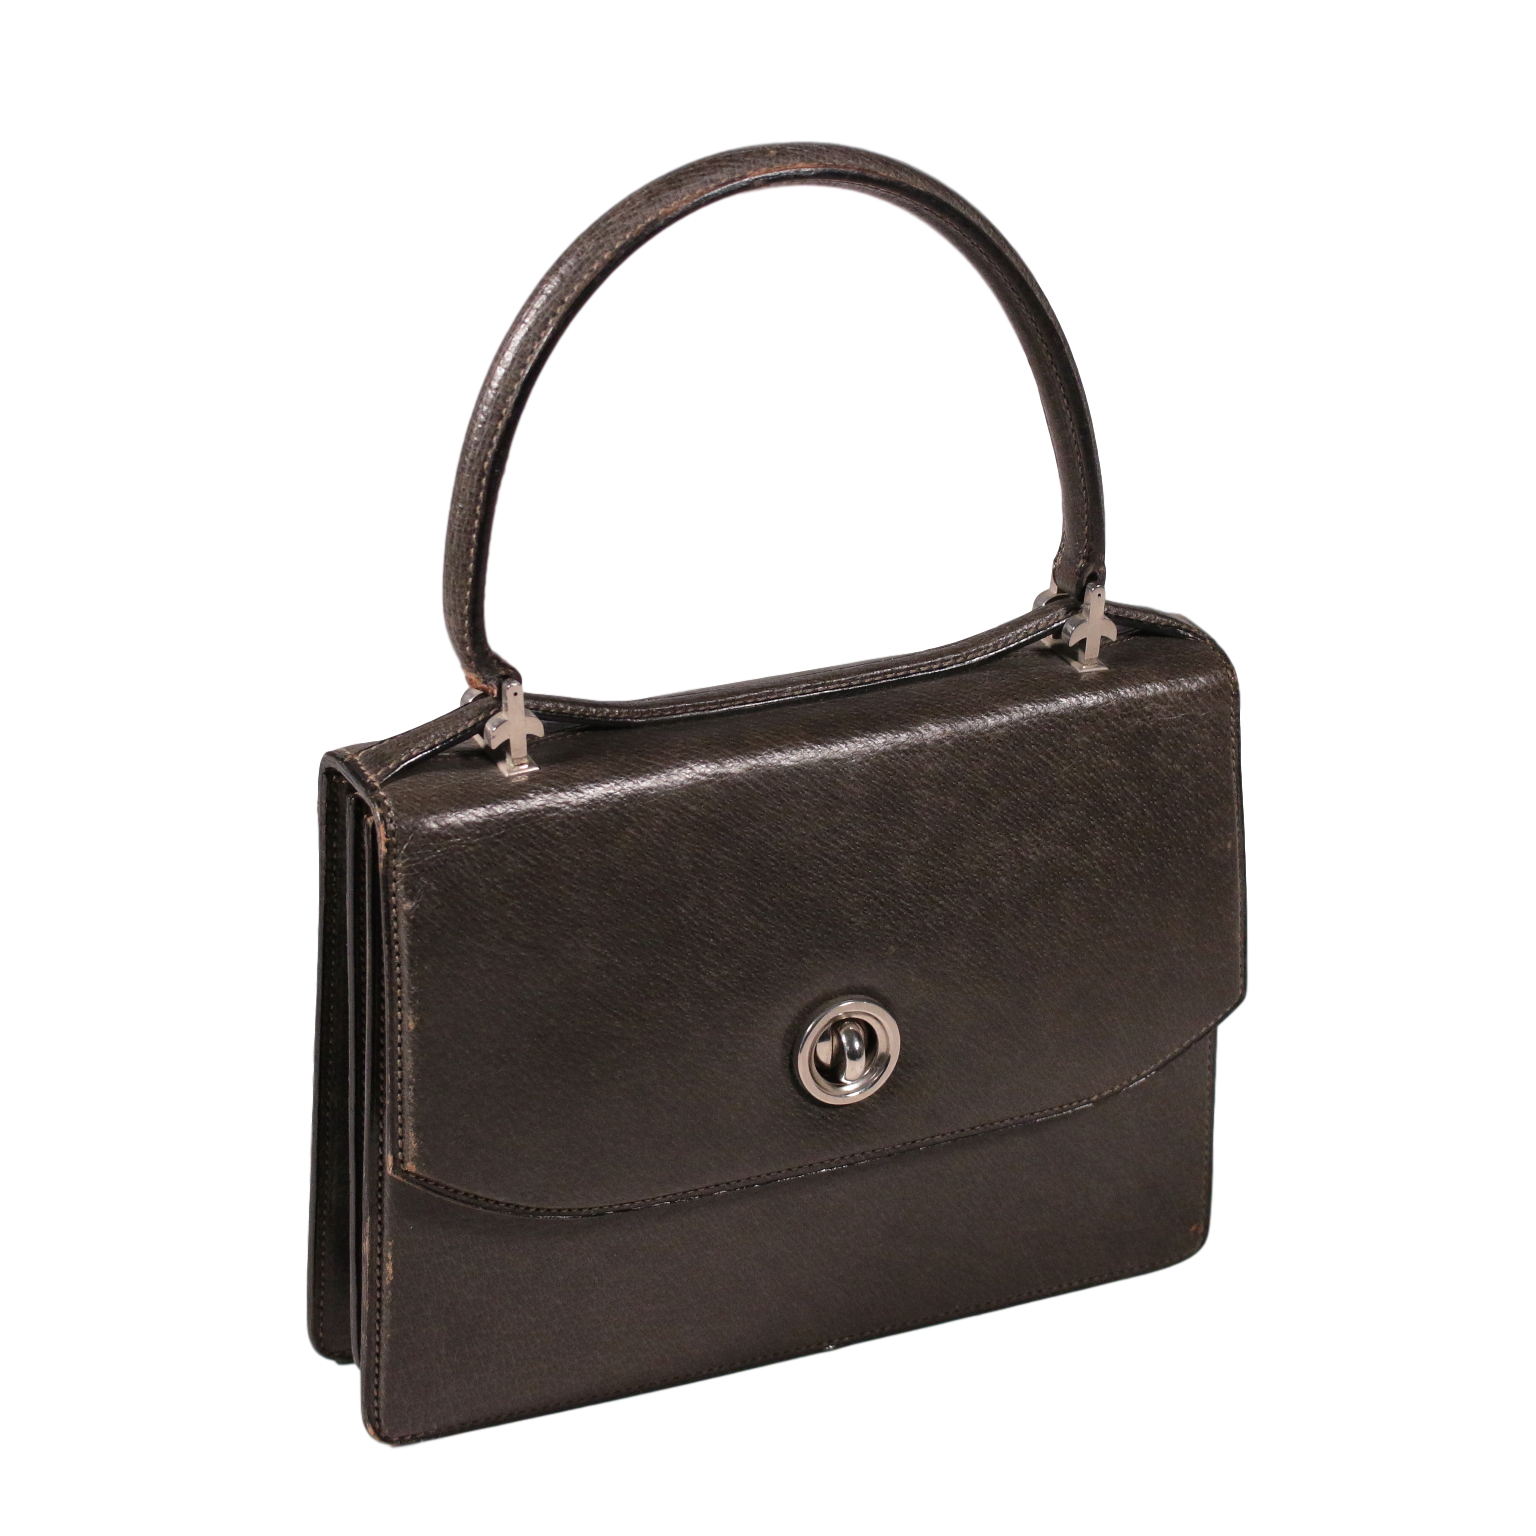 1960's gucci handbags